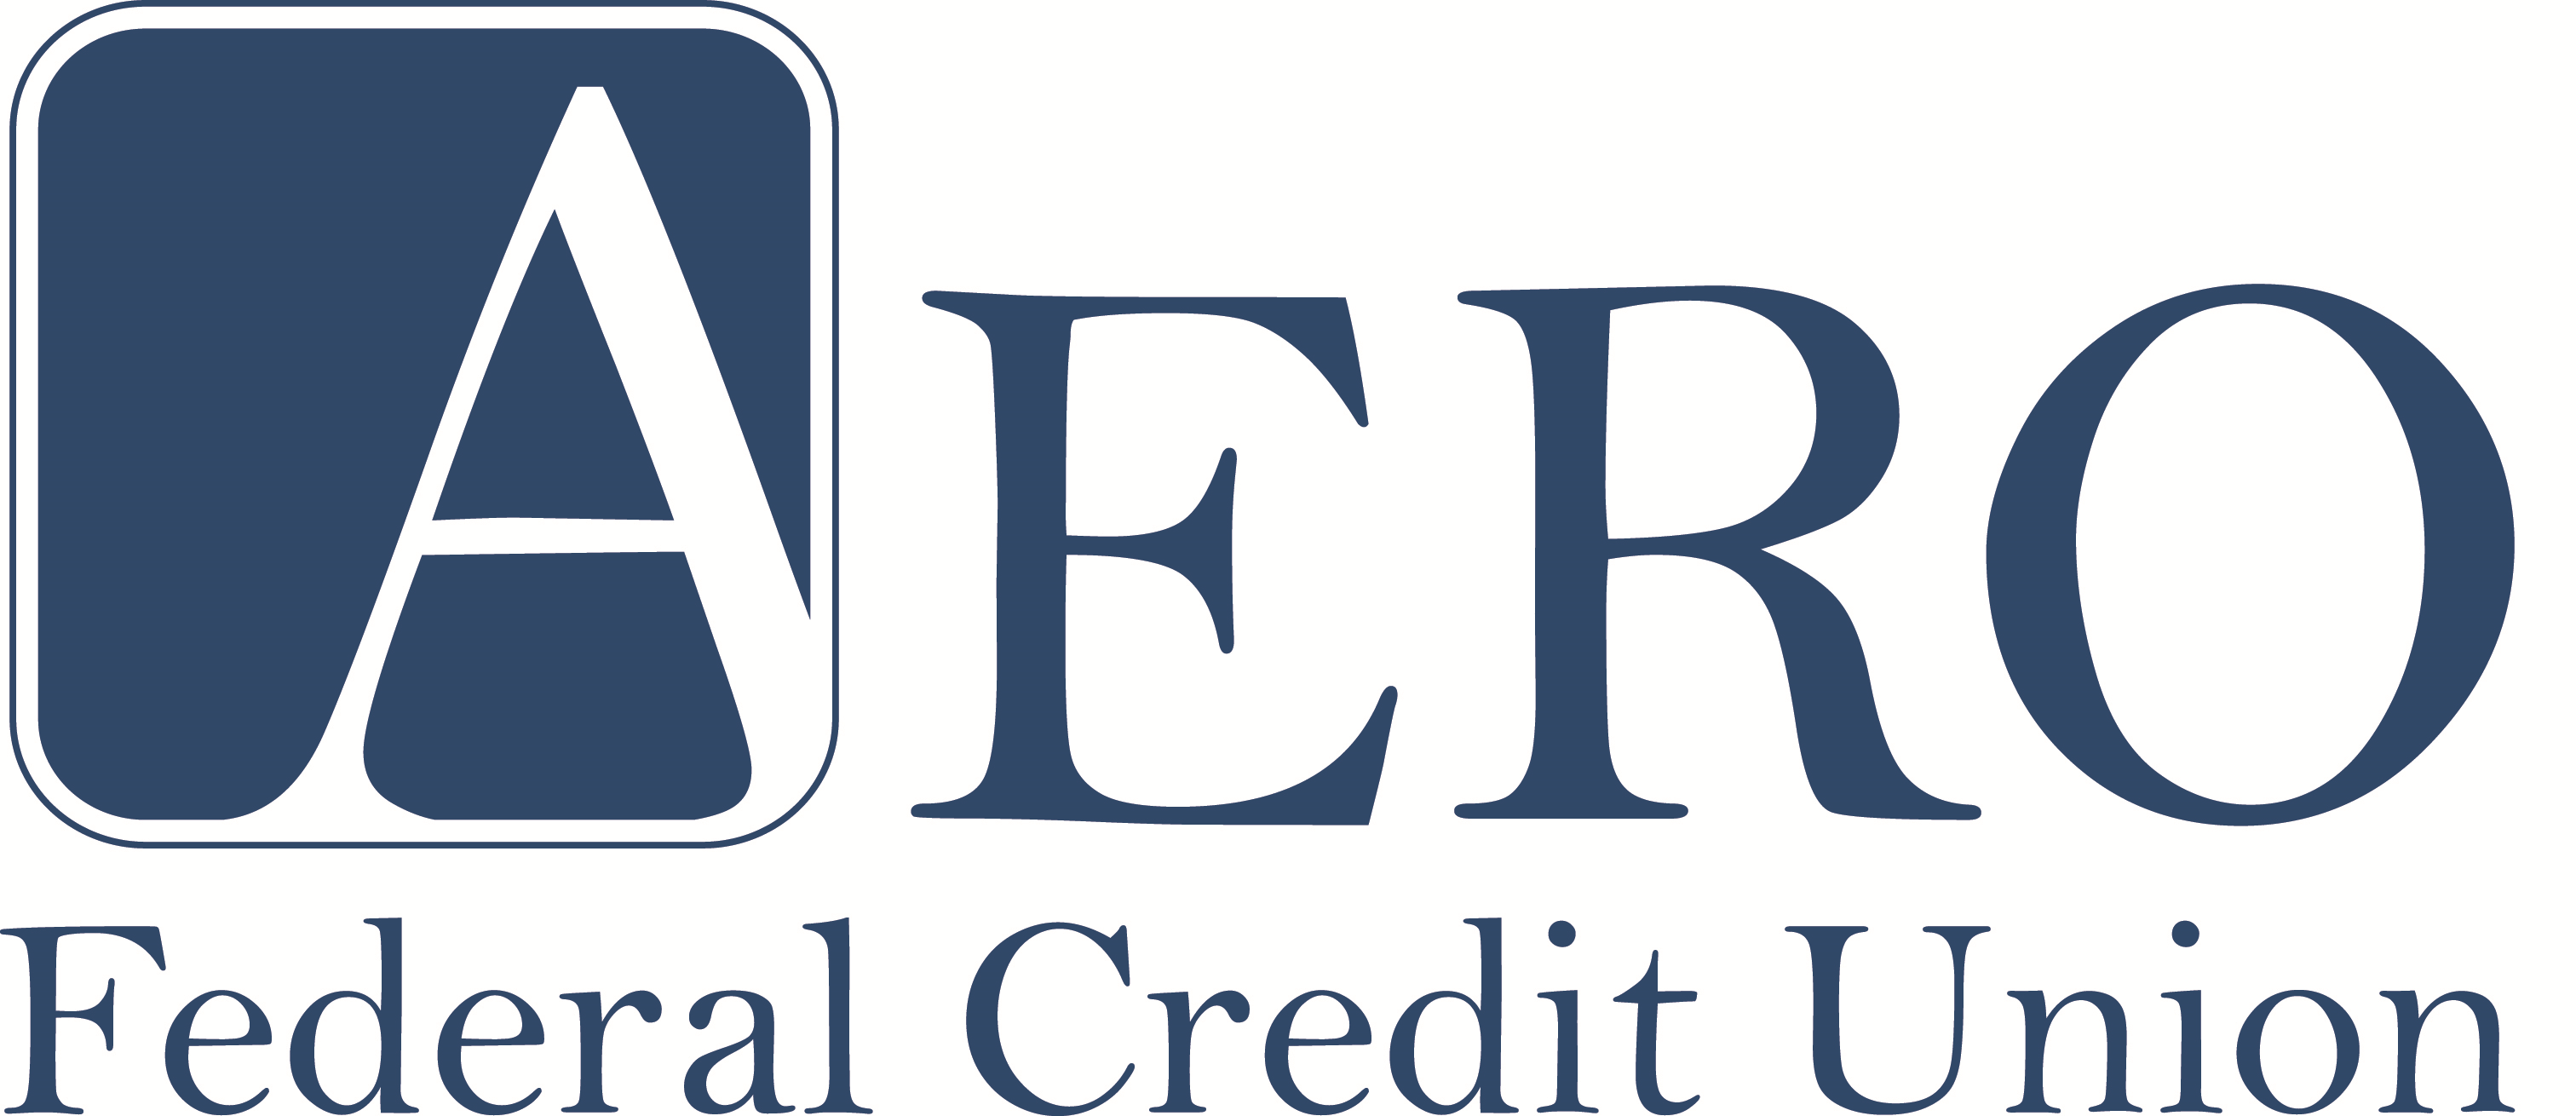 AERO Federal Credit Union logo